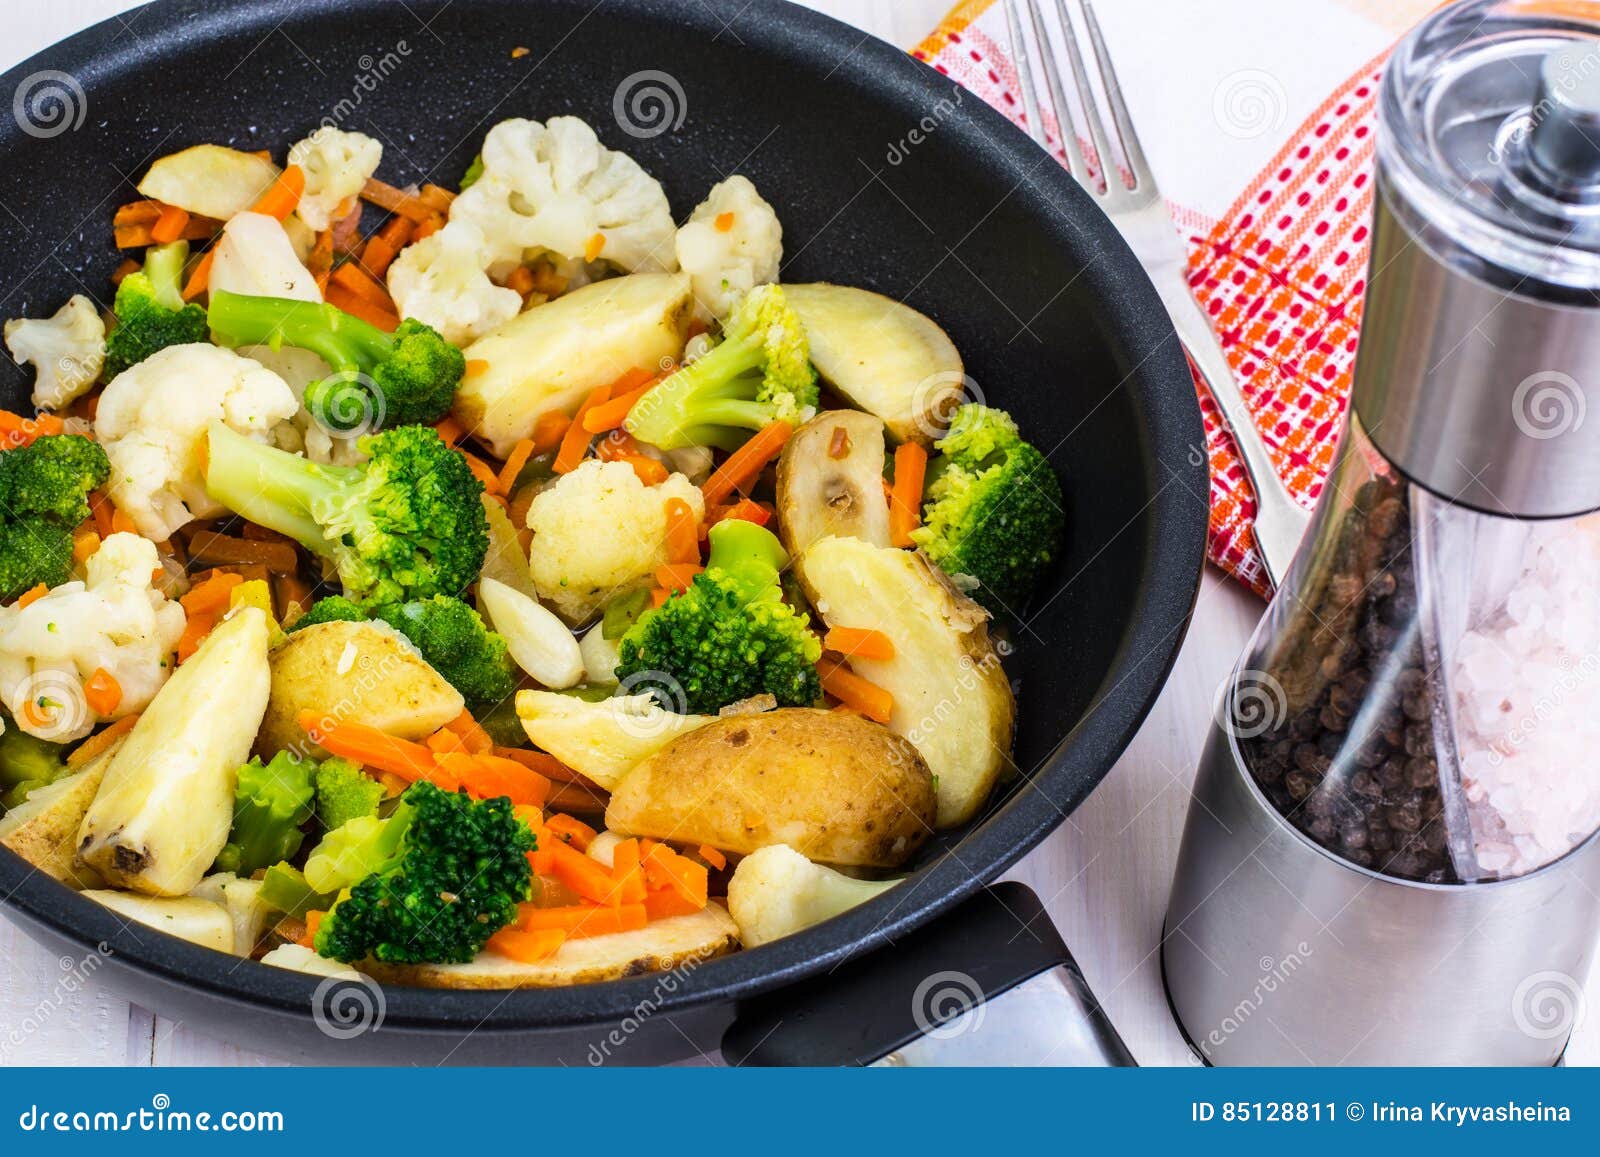 Брокколи цветная капуста картофель